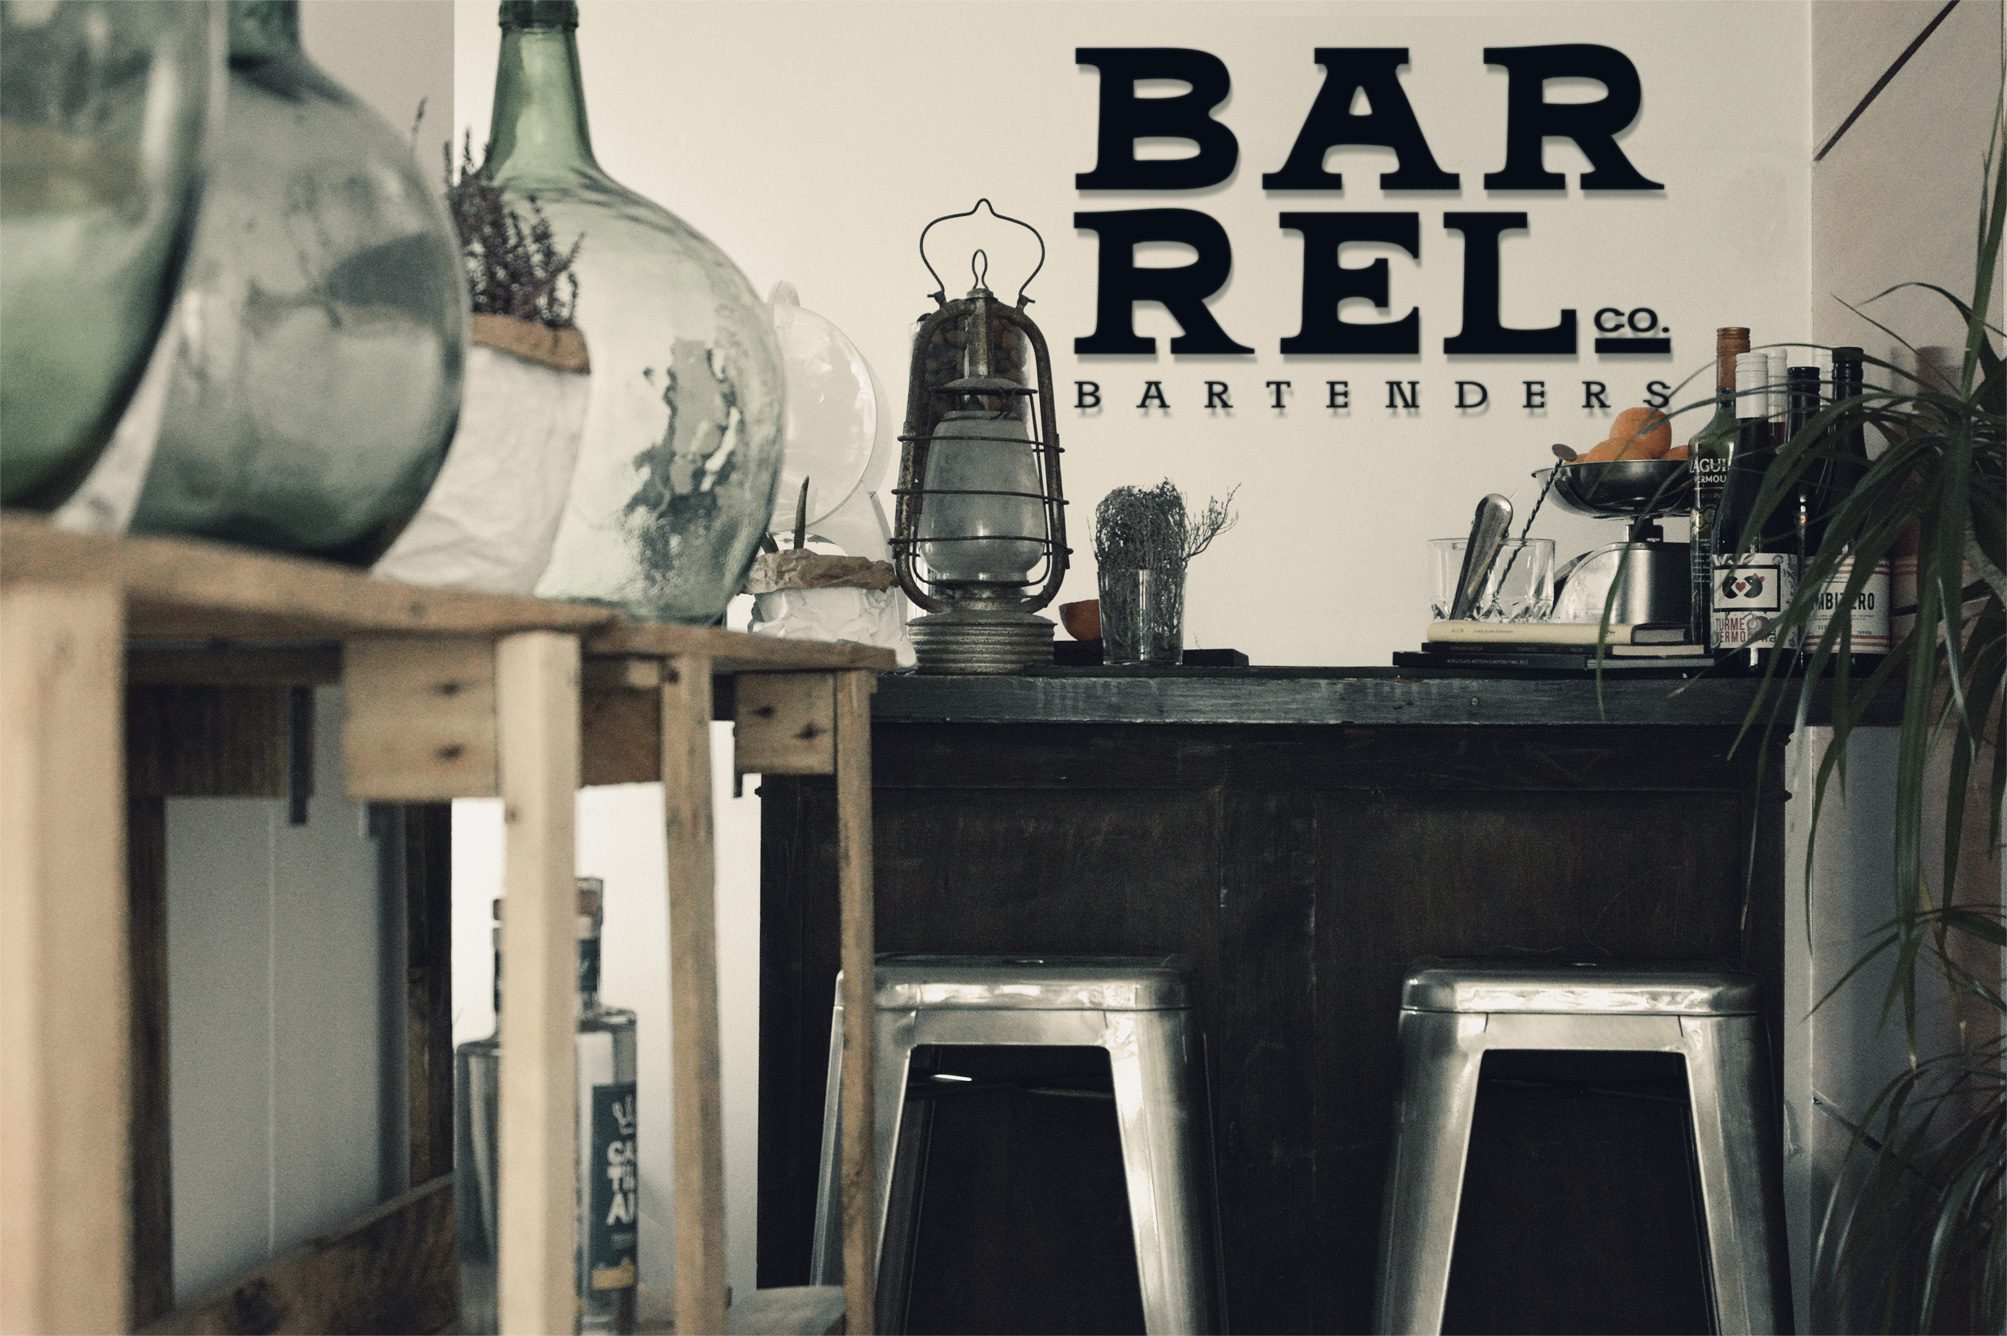 Barrel Bartenders Bar Cocktails